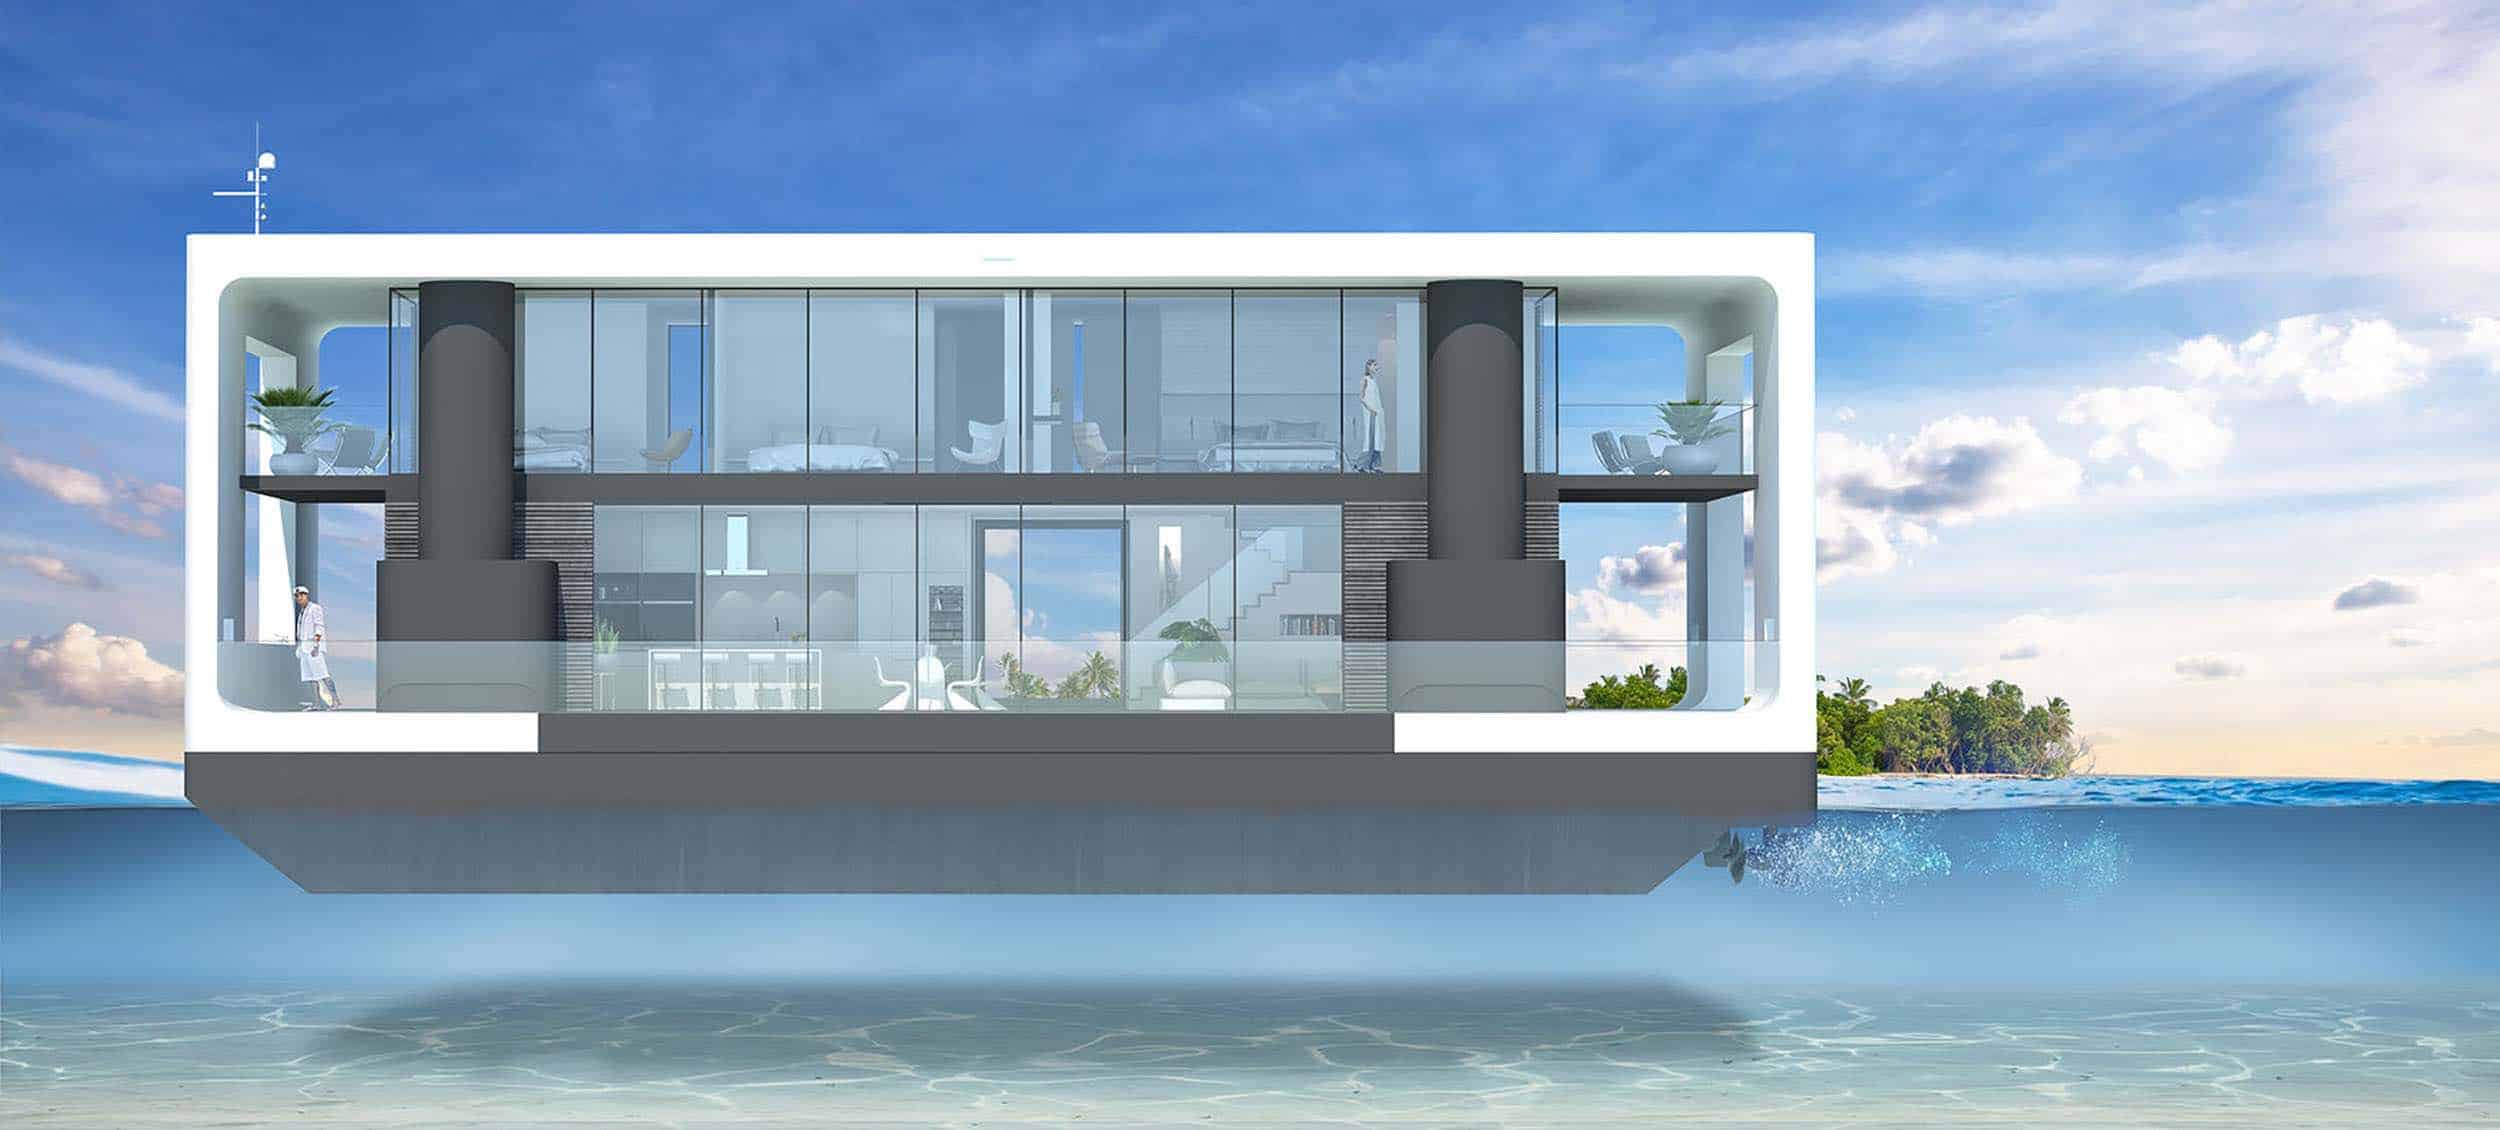 Arkup, estas lujosas residencias flotantes en Miami pueden resistir cualquier huracán